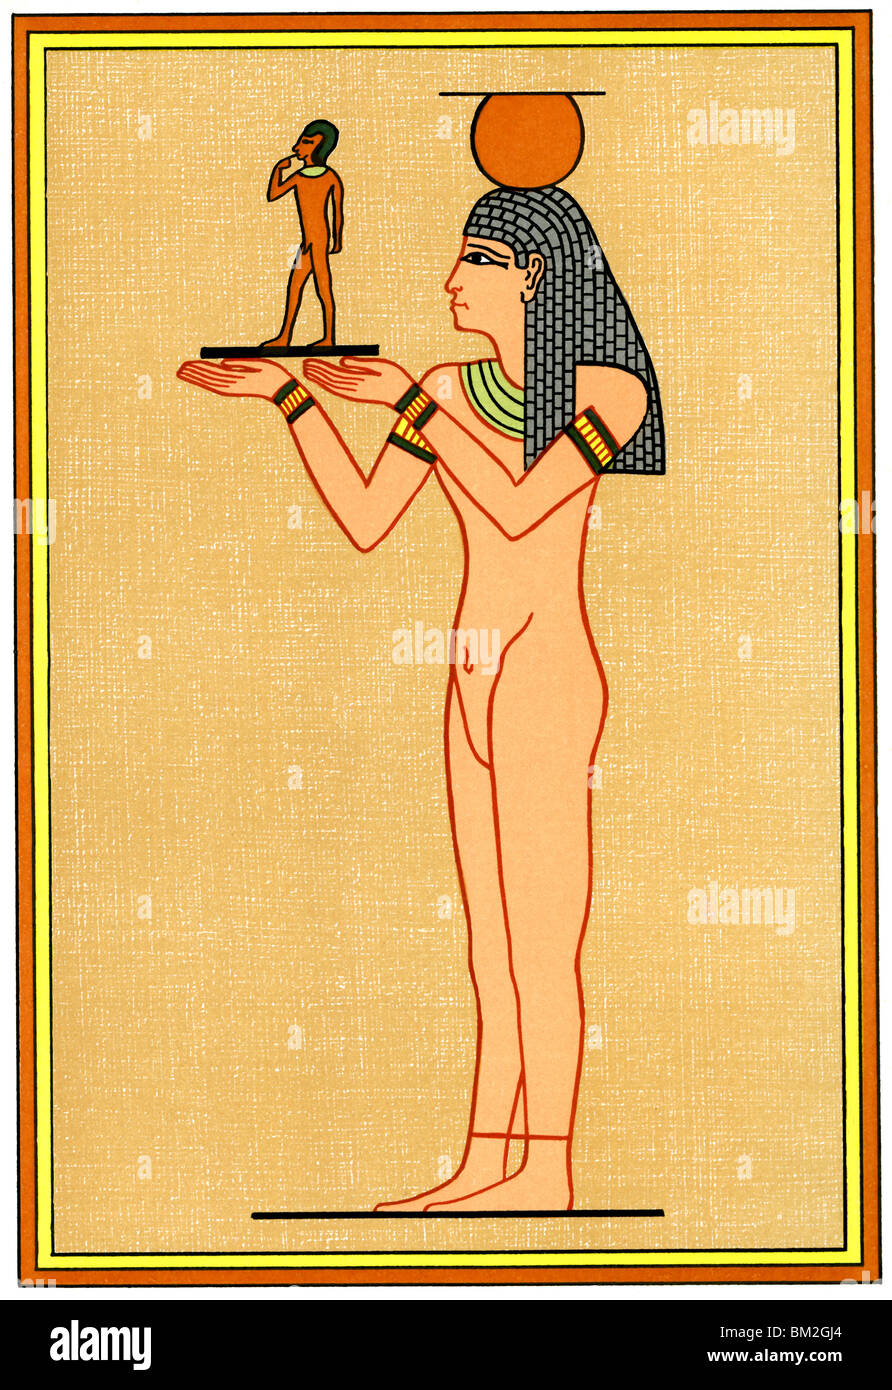 Écrou, déesse de ciel et la mère et fille de Dieu Soleil Ra, a donné naissance à Horus (illustré ici), appelé Harpocrates Banque D'Images